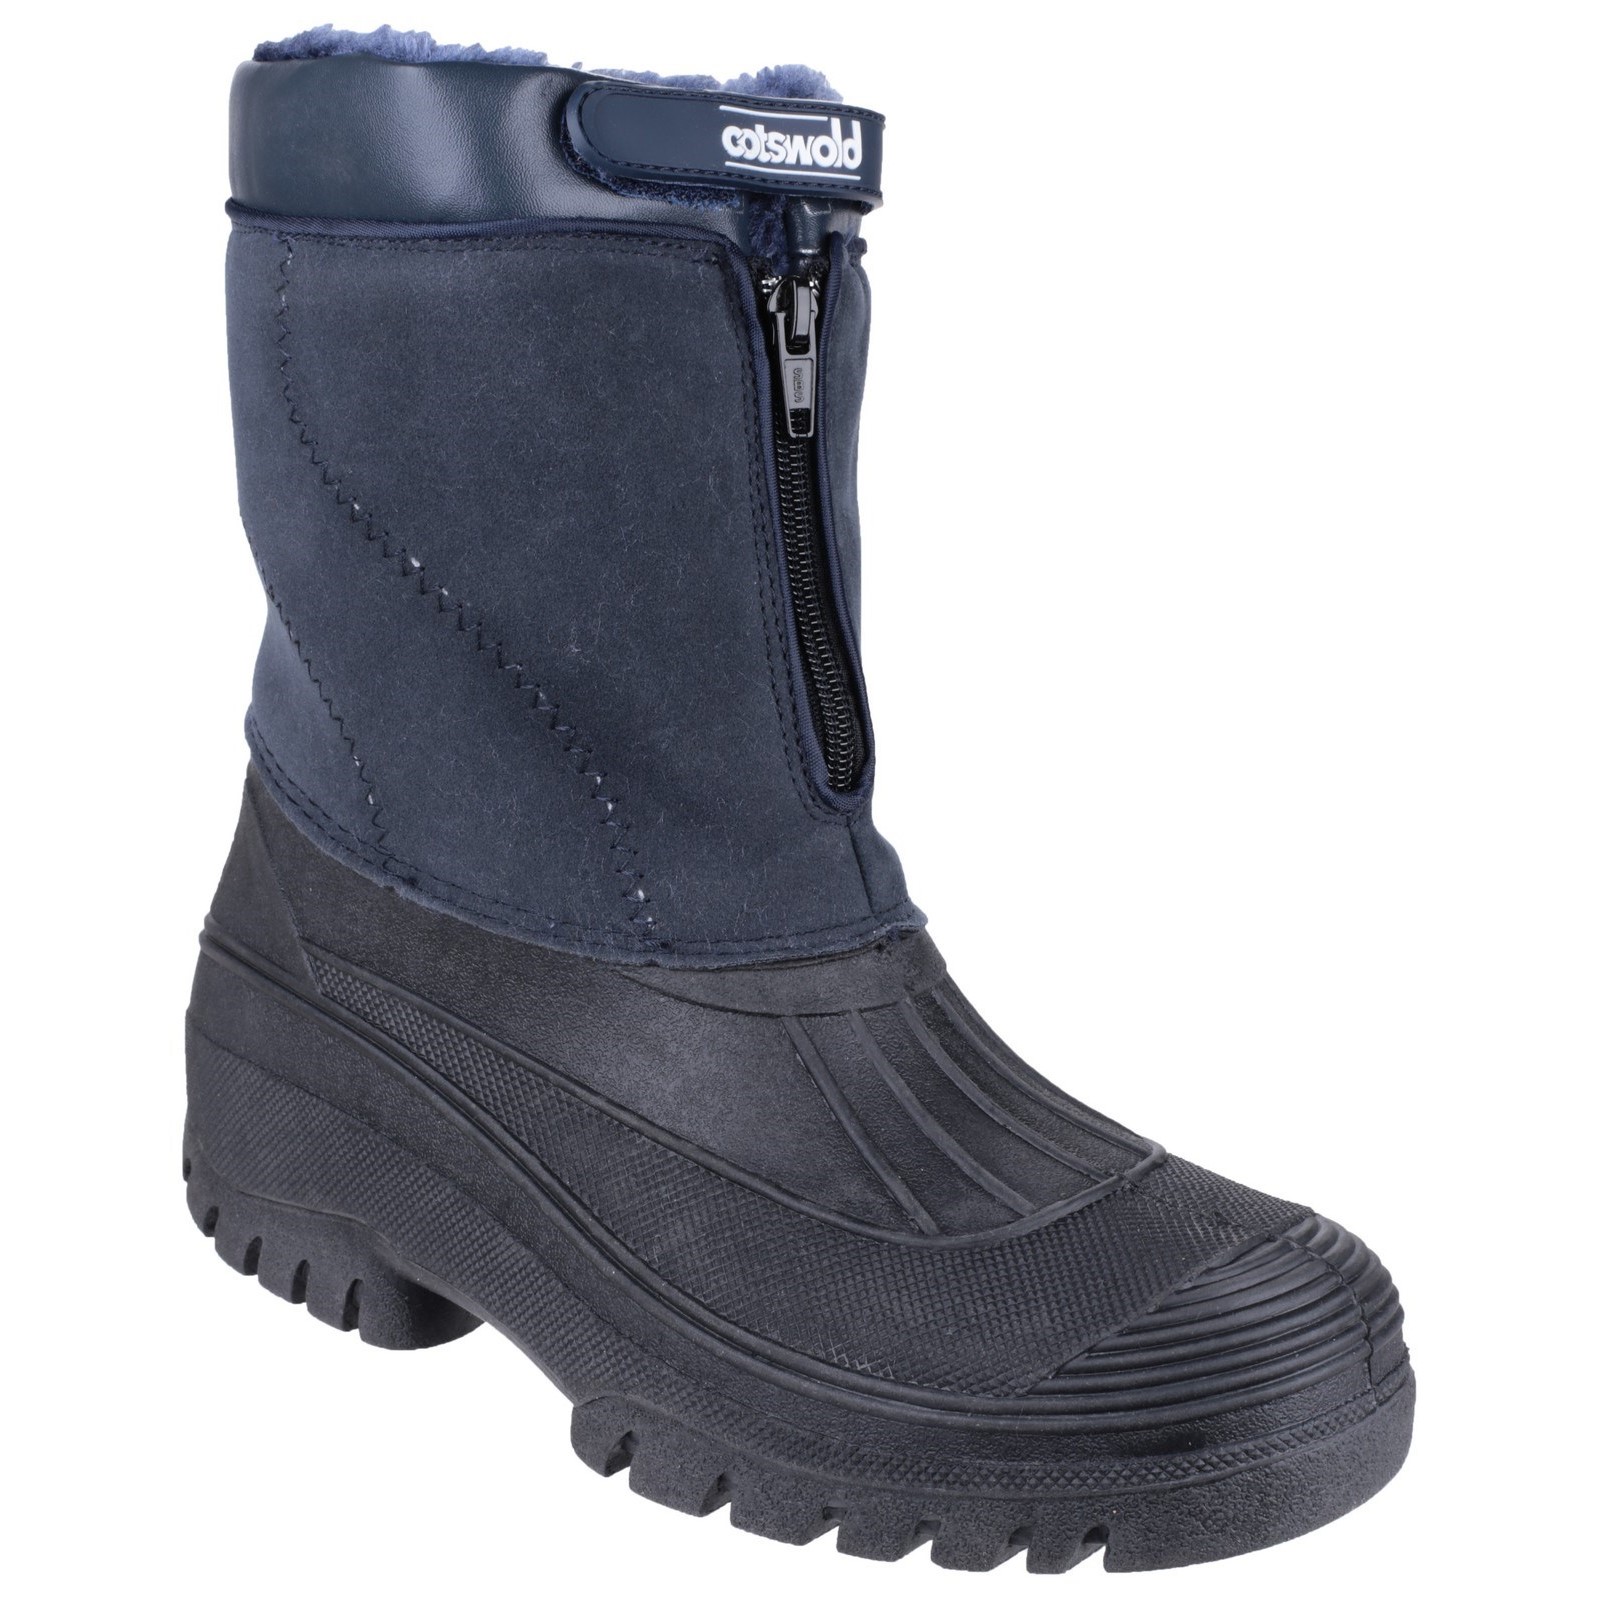 Venture Waterproof Winter Boot